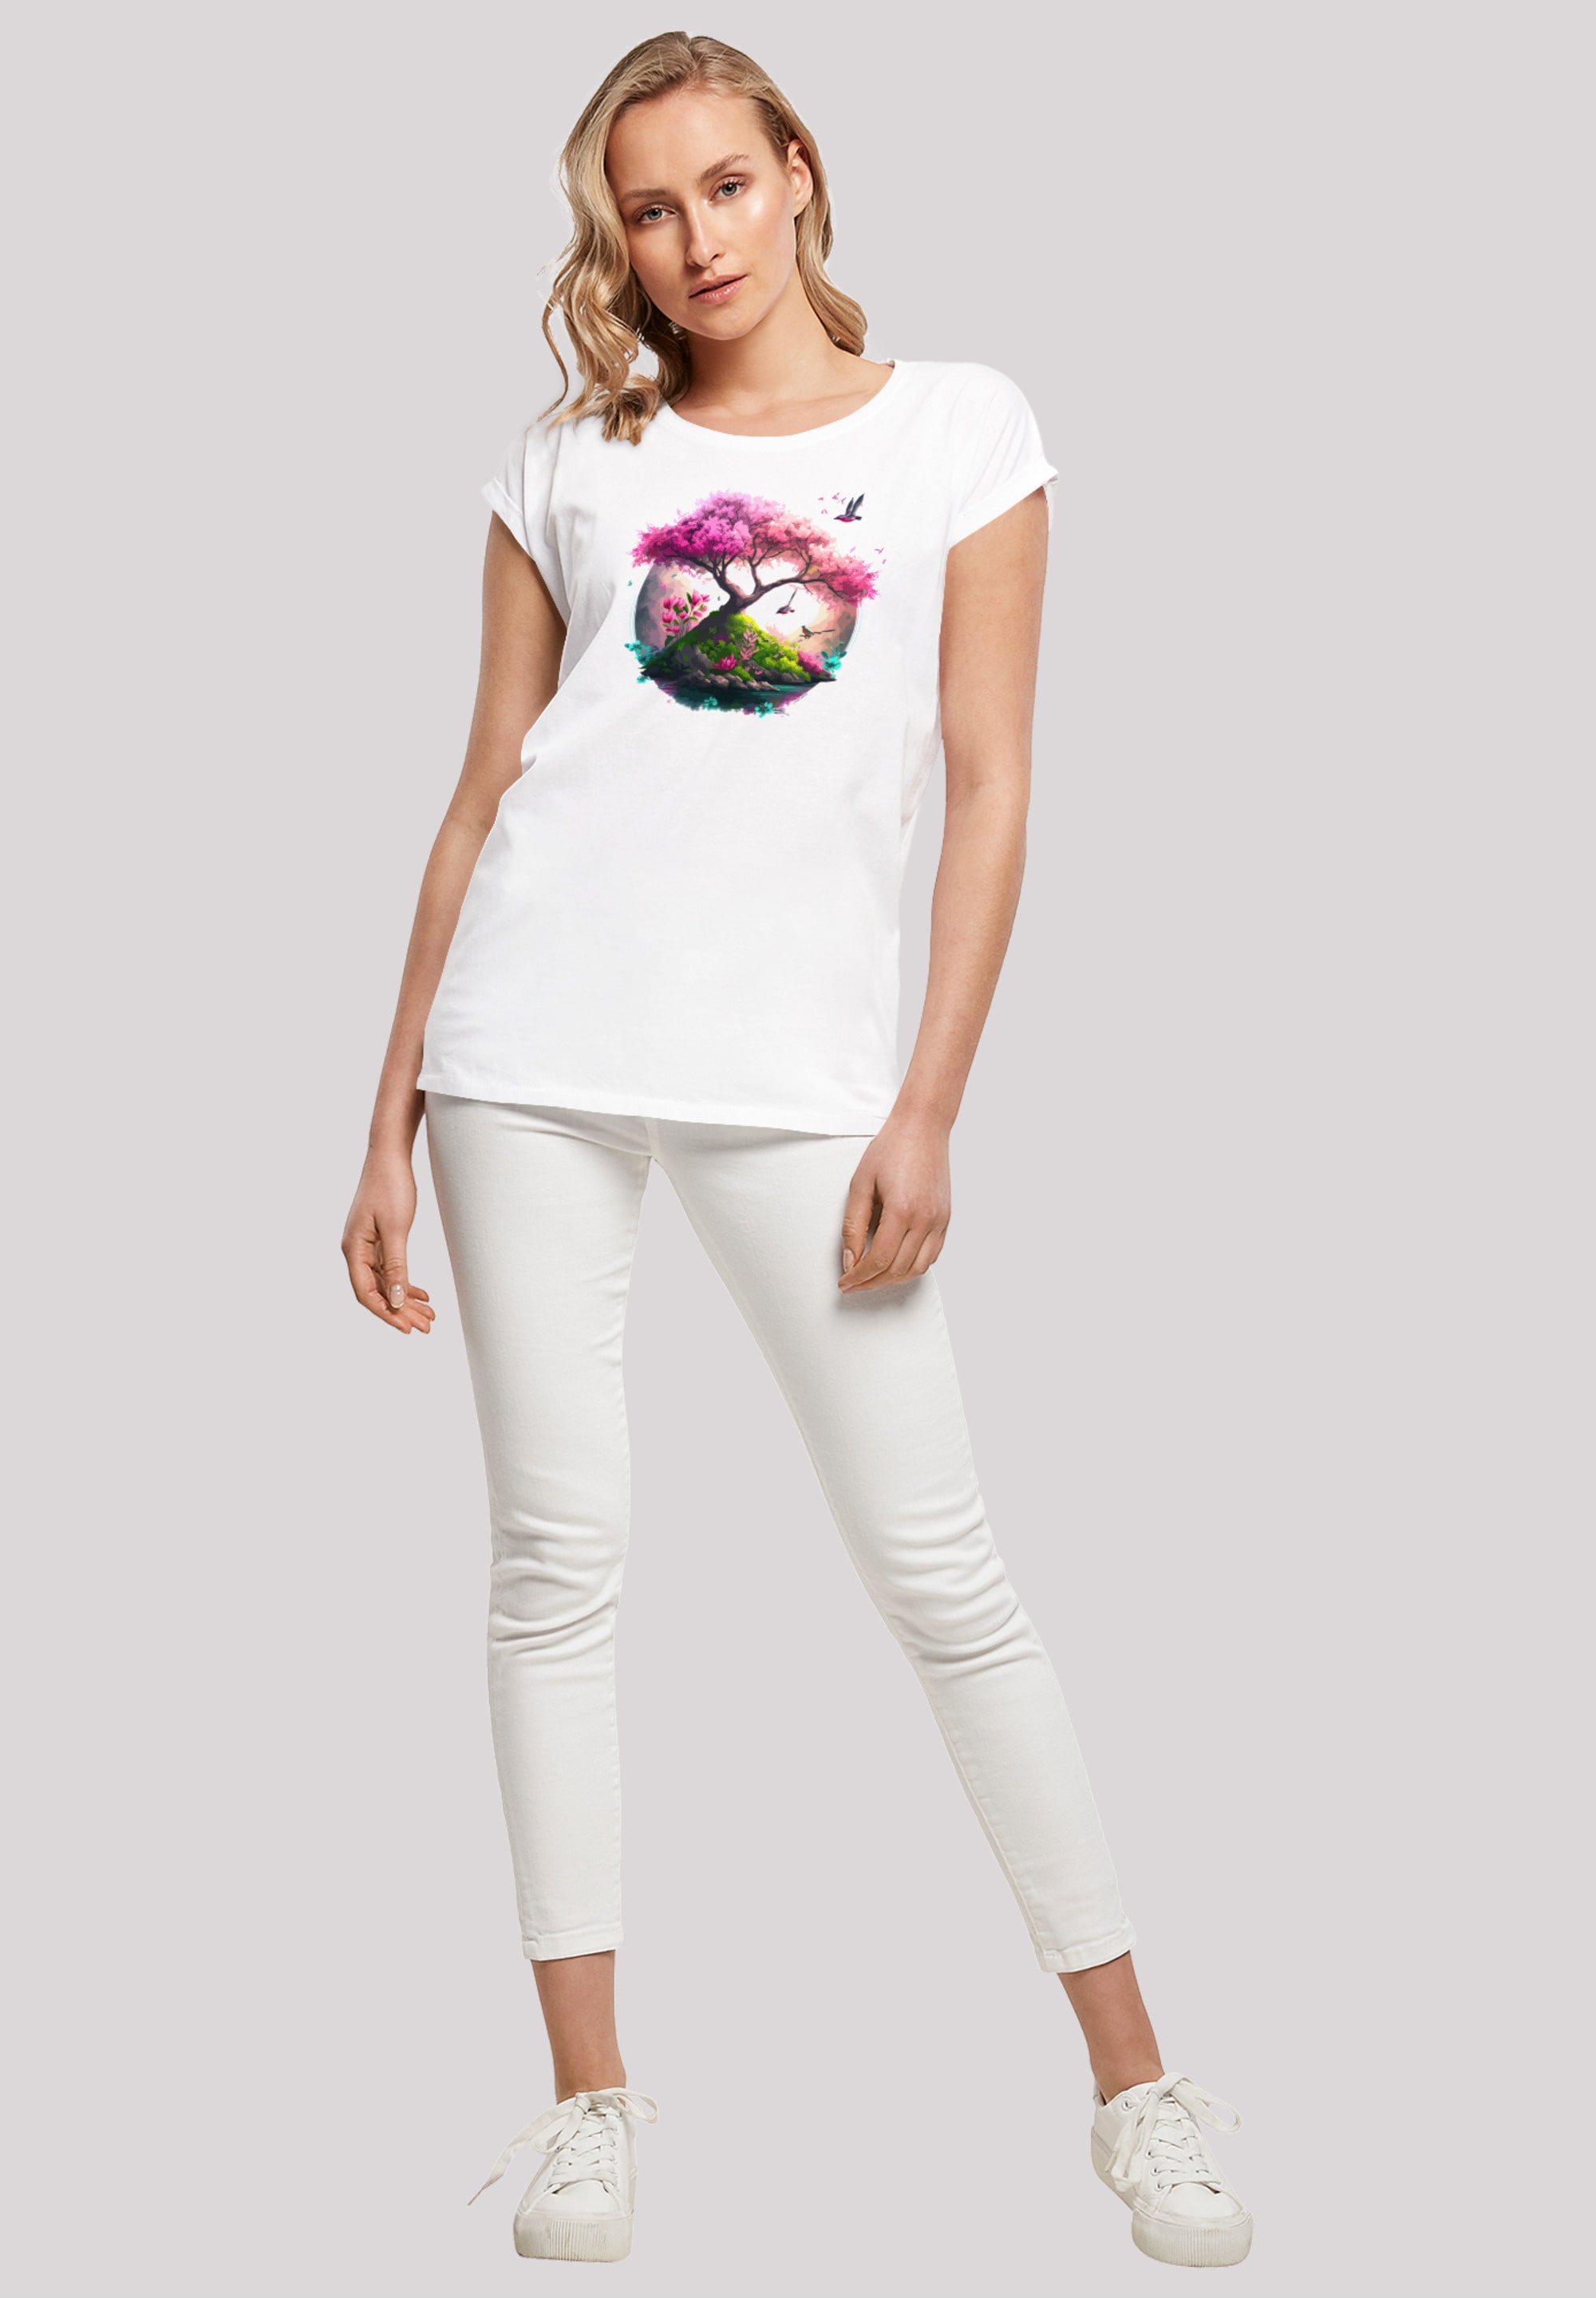 F4NT4STIC T-Shirt Print bestellen »Kirschblüten Baum«